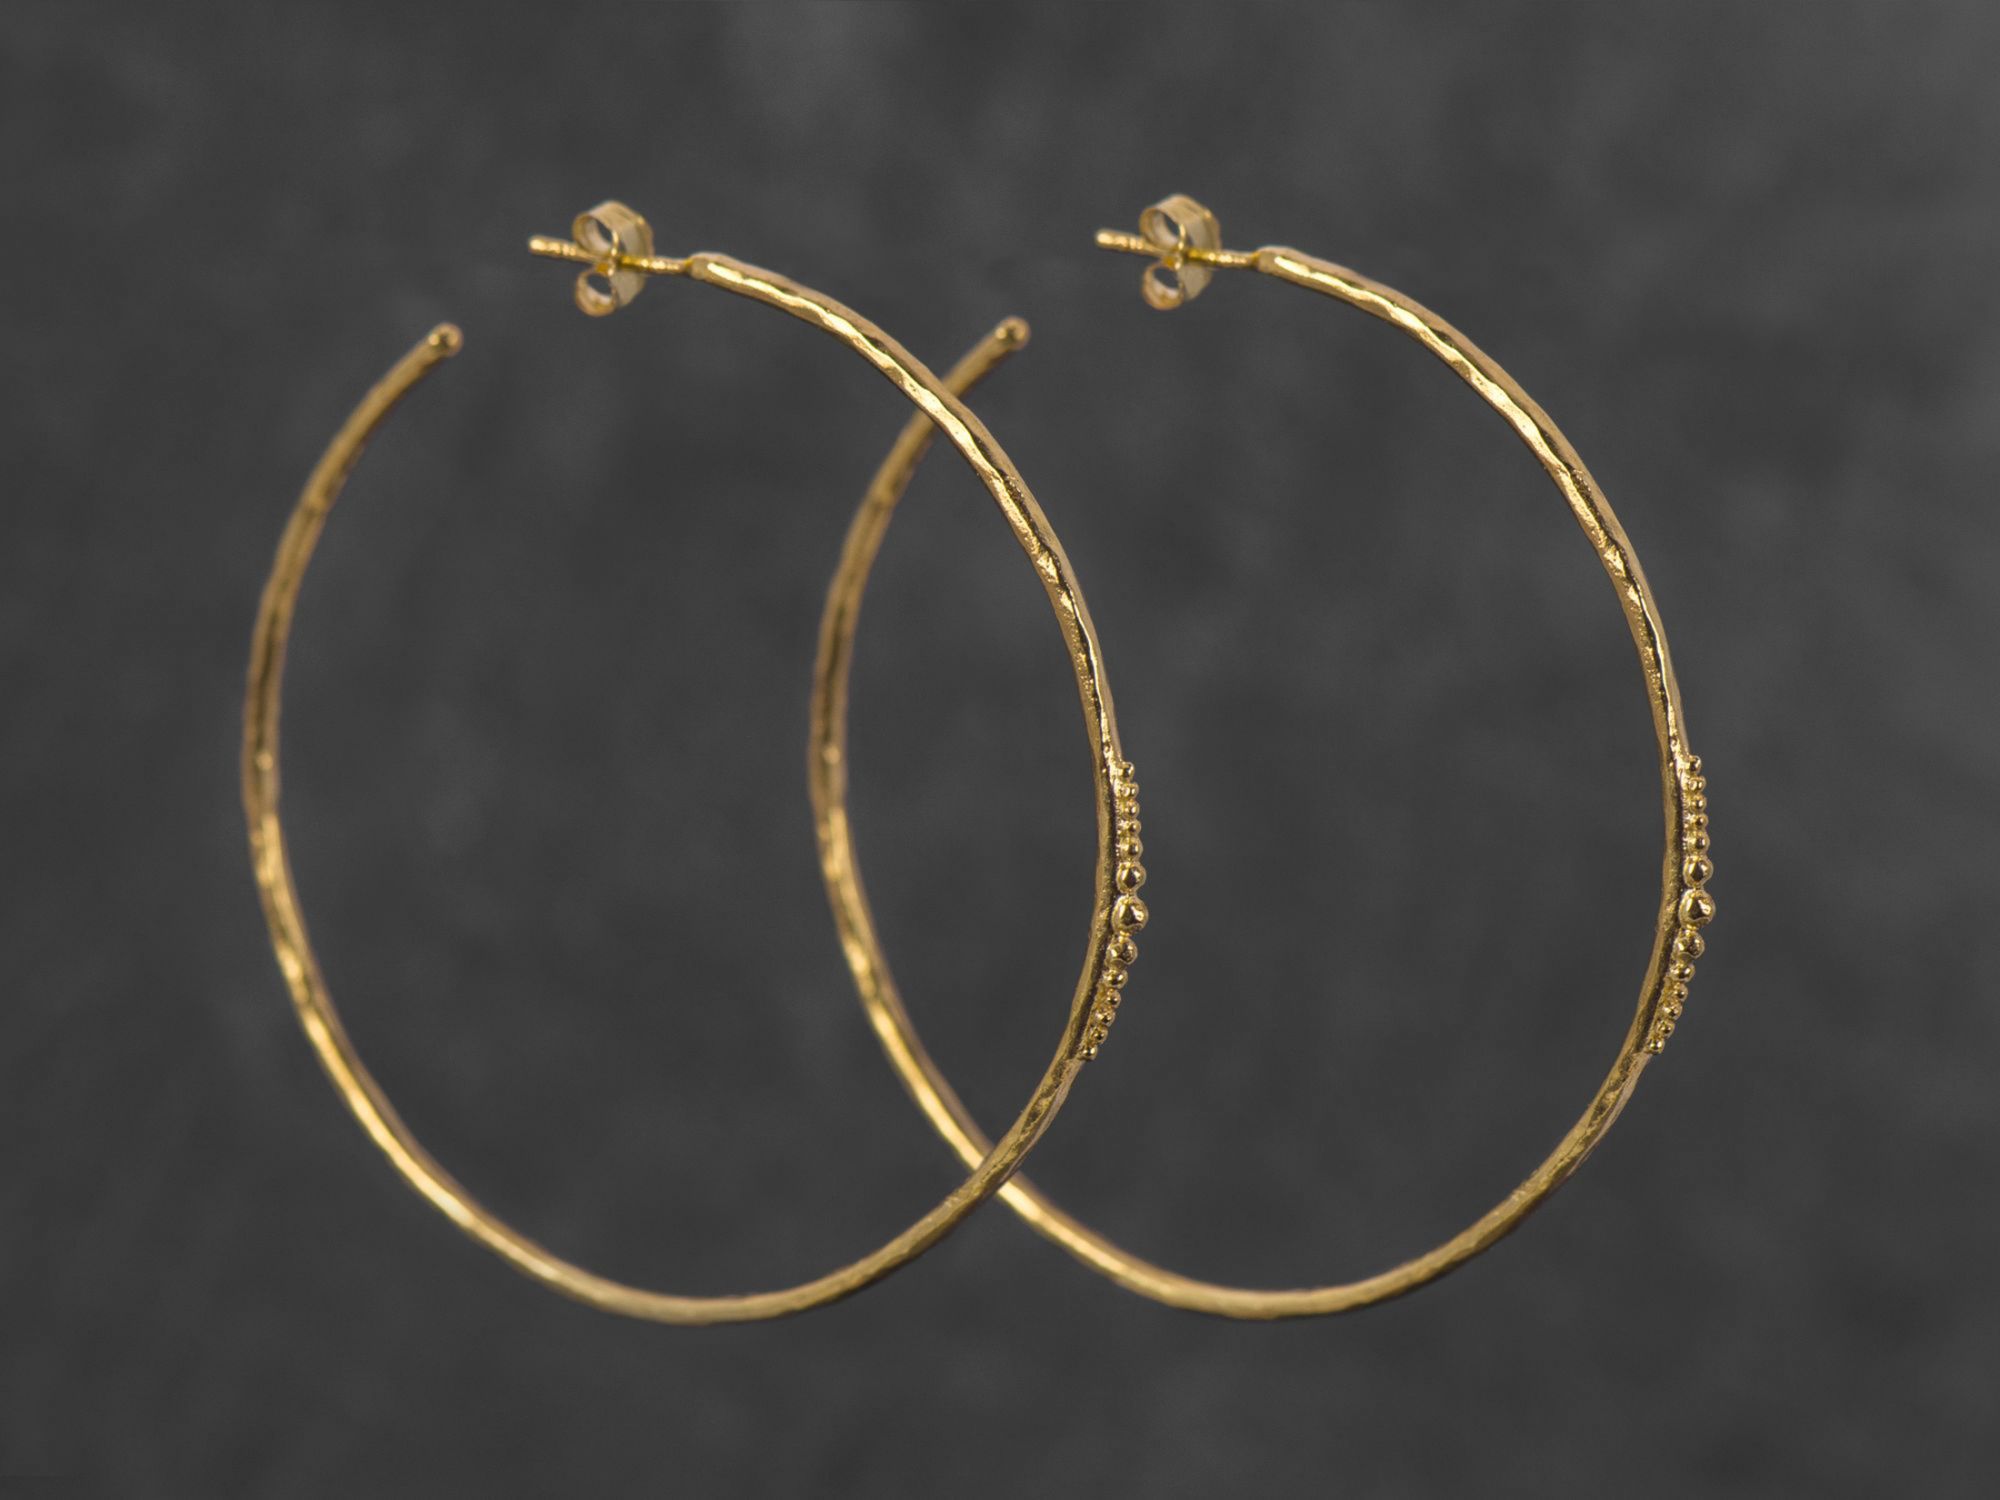 Orion vermeil earrings by Emmanuelle Zysman